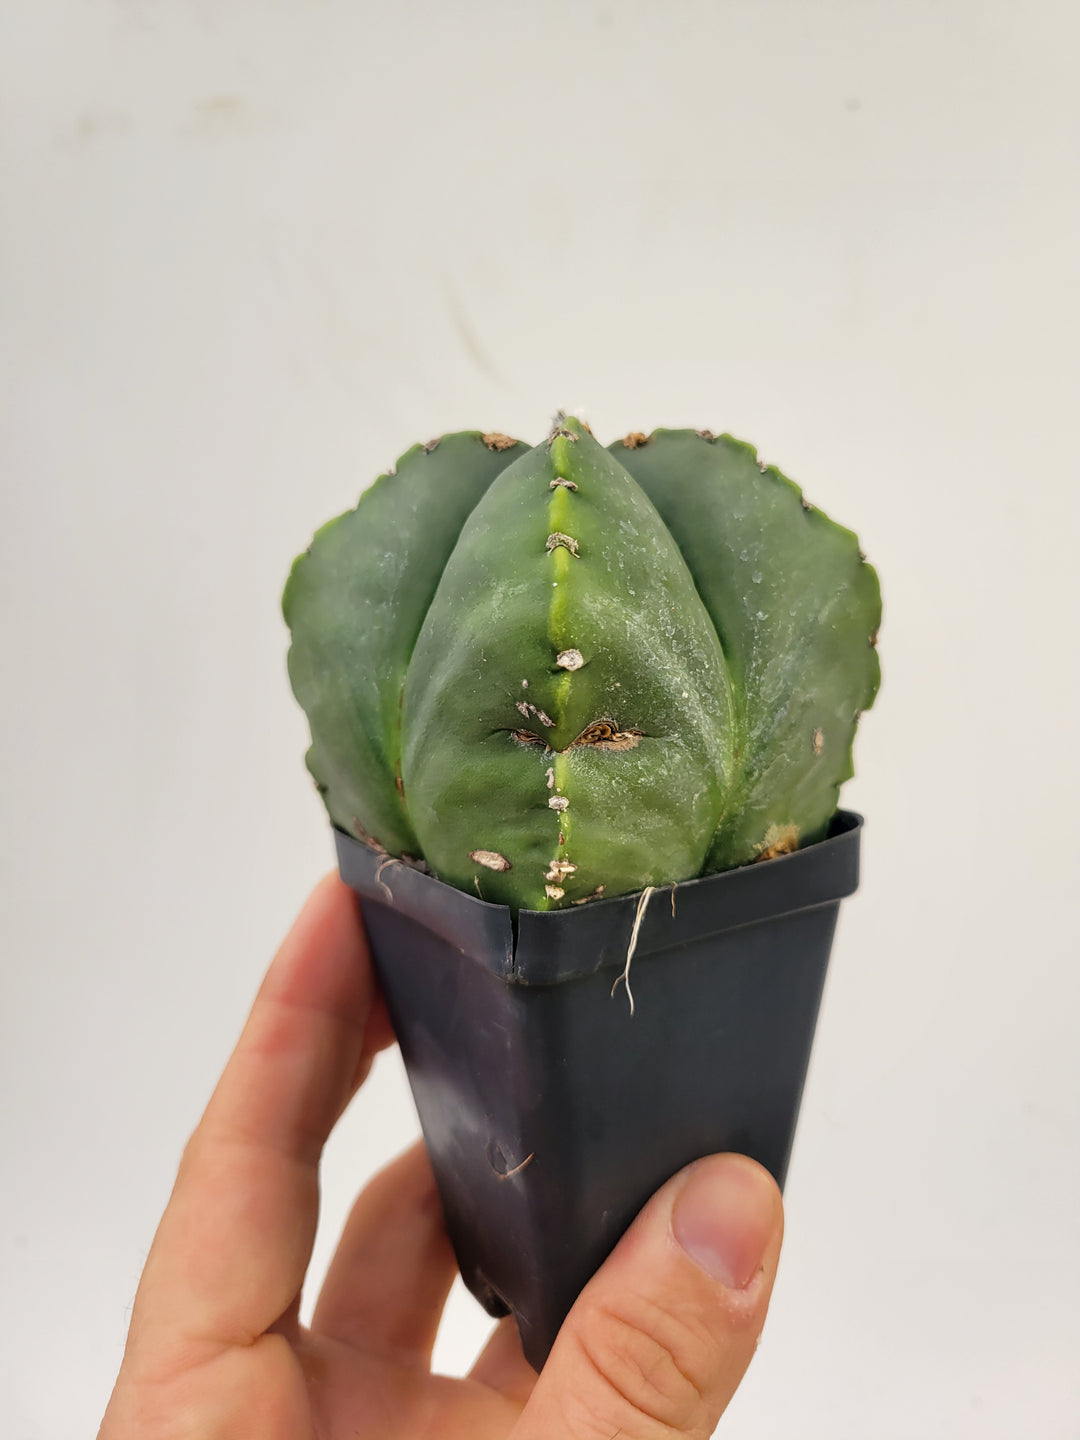 Astrophytum Myriostigma cv "kikko" hybrid . 2.5" pot, very established, Specimen size XL   #52 - Nice Plants Good Pots